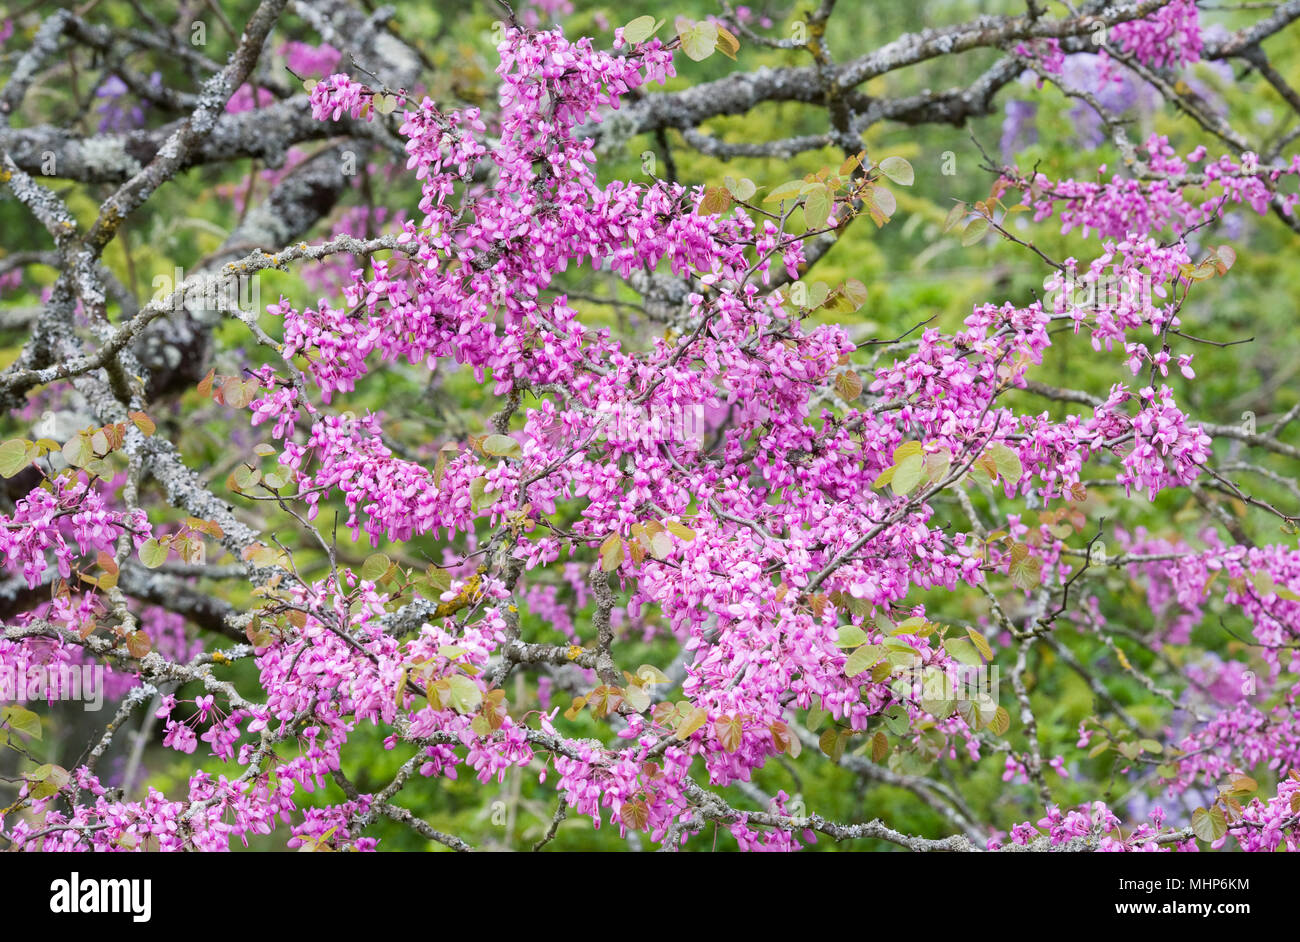 Cercis siliquastrum flowering in Spring. Judas tree. Stock Photo